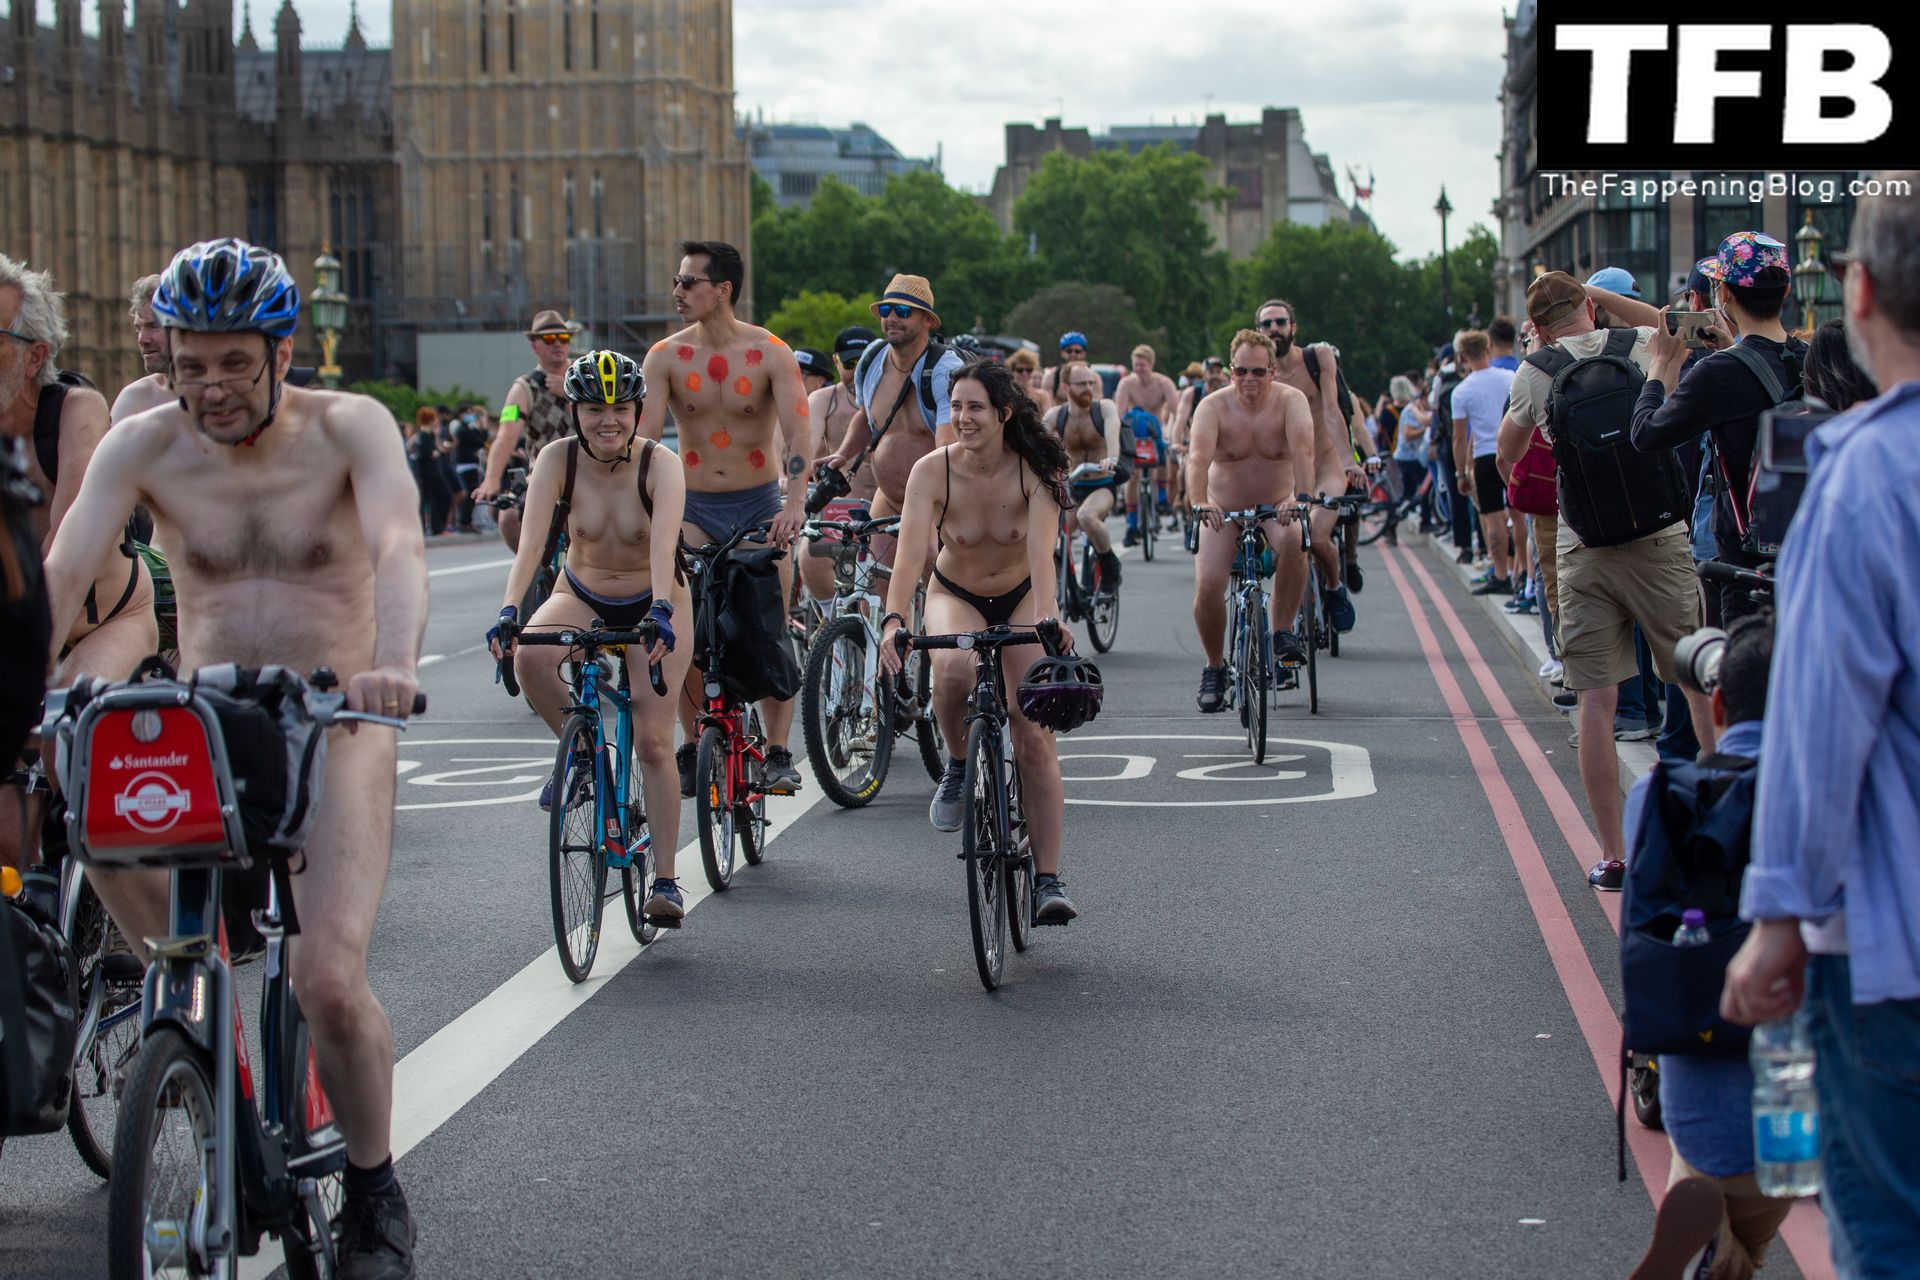 The-2022-World-Naked-Bike-Ride-The-Fappening-Blog-41.jpg